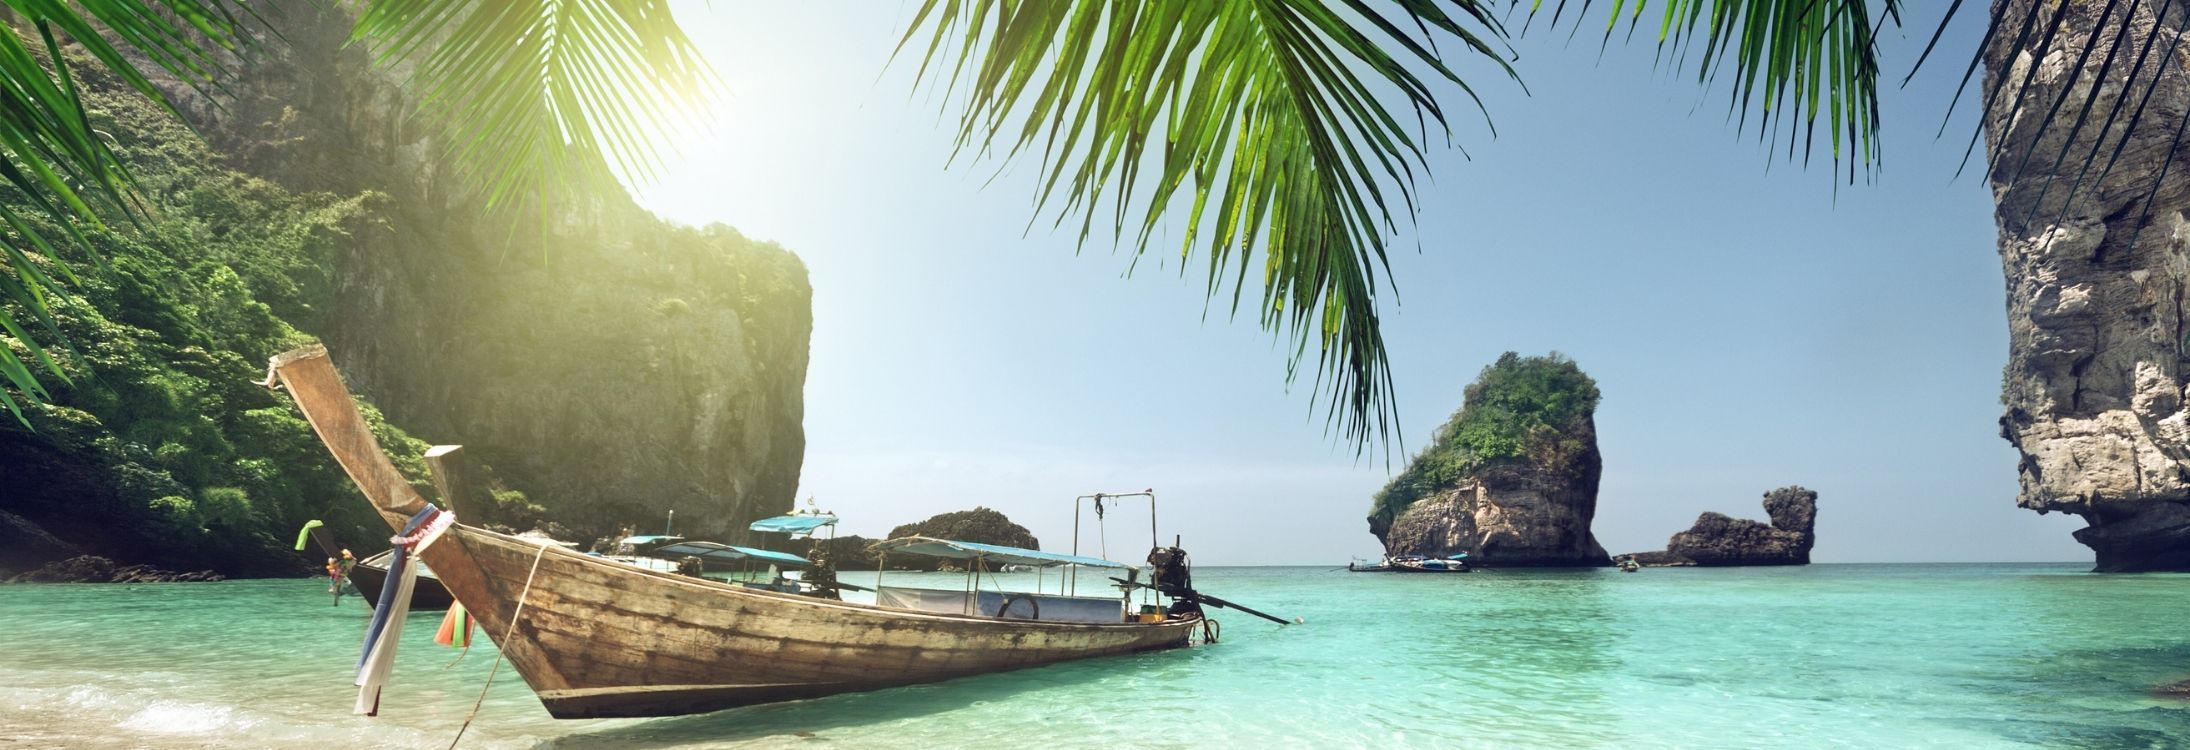 How to get a Thailand tourist visa